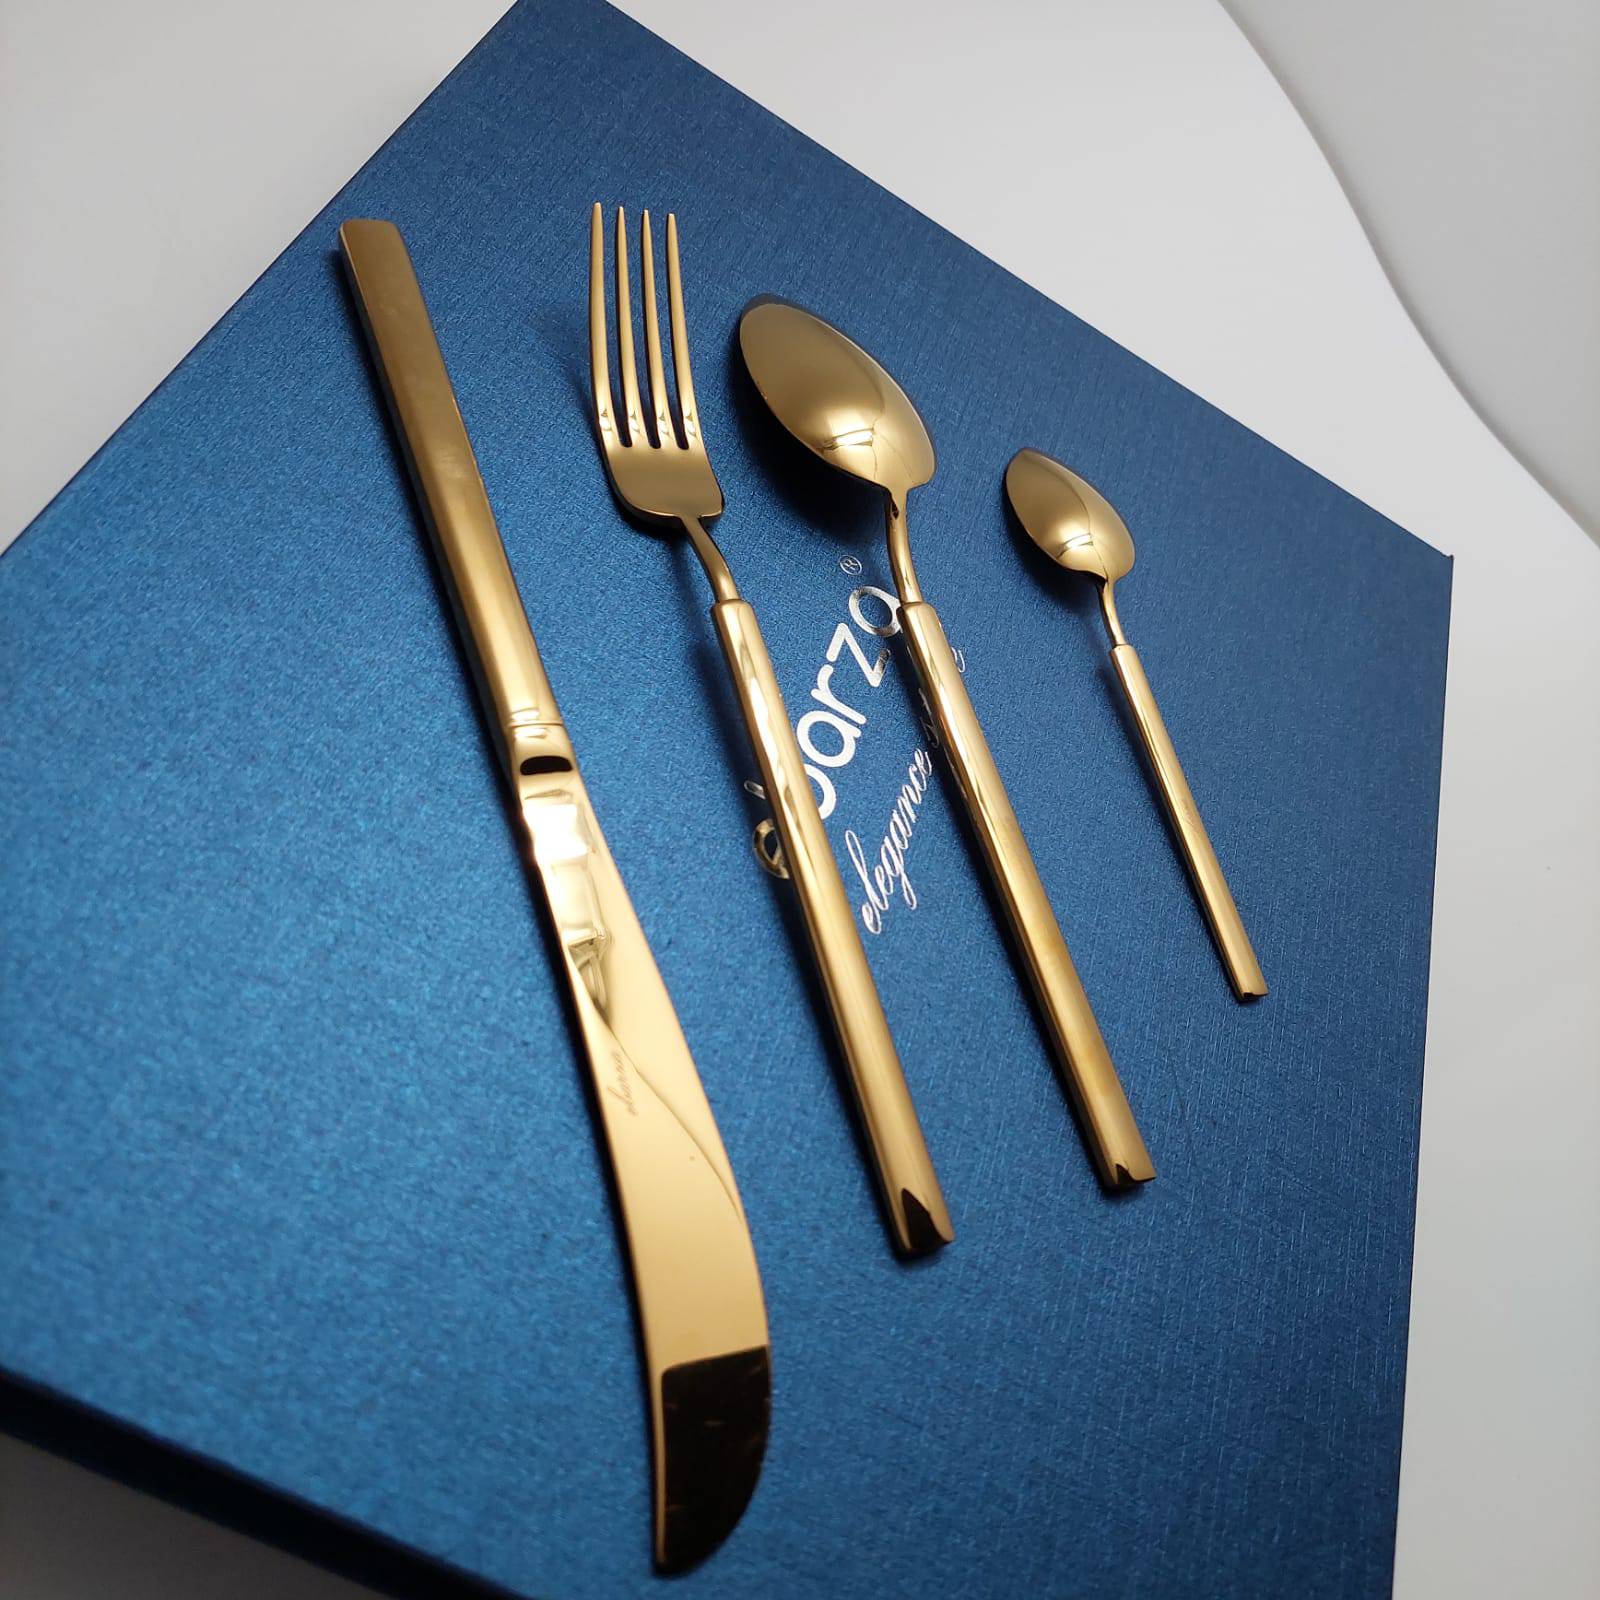 24 Pieces Dax Cutlery Set 9023G -  Cutlery Sets | طقم أدوات مائدة داكس 24 قطعة - ebarza Furniture UAE | Shop Modern Furniture in Abu Dhabi & Dubai - مفروشات ايبازرا في الامارات | تسوق اثاث عصري وديكورات مميزة في دبي وابوظبي